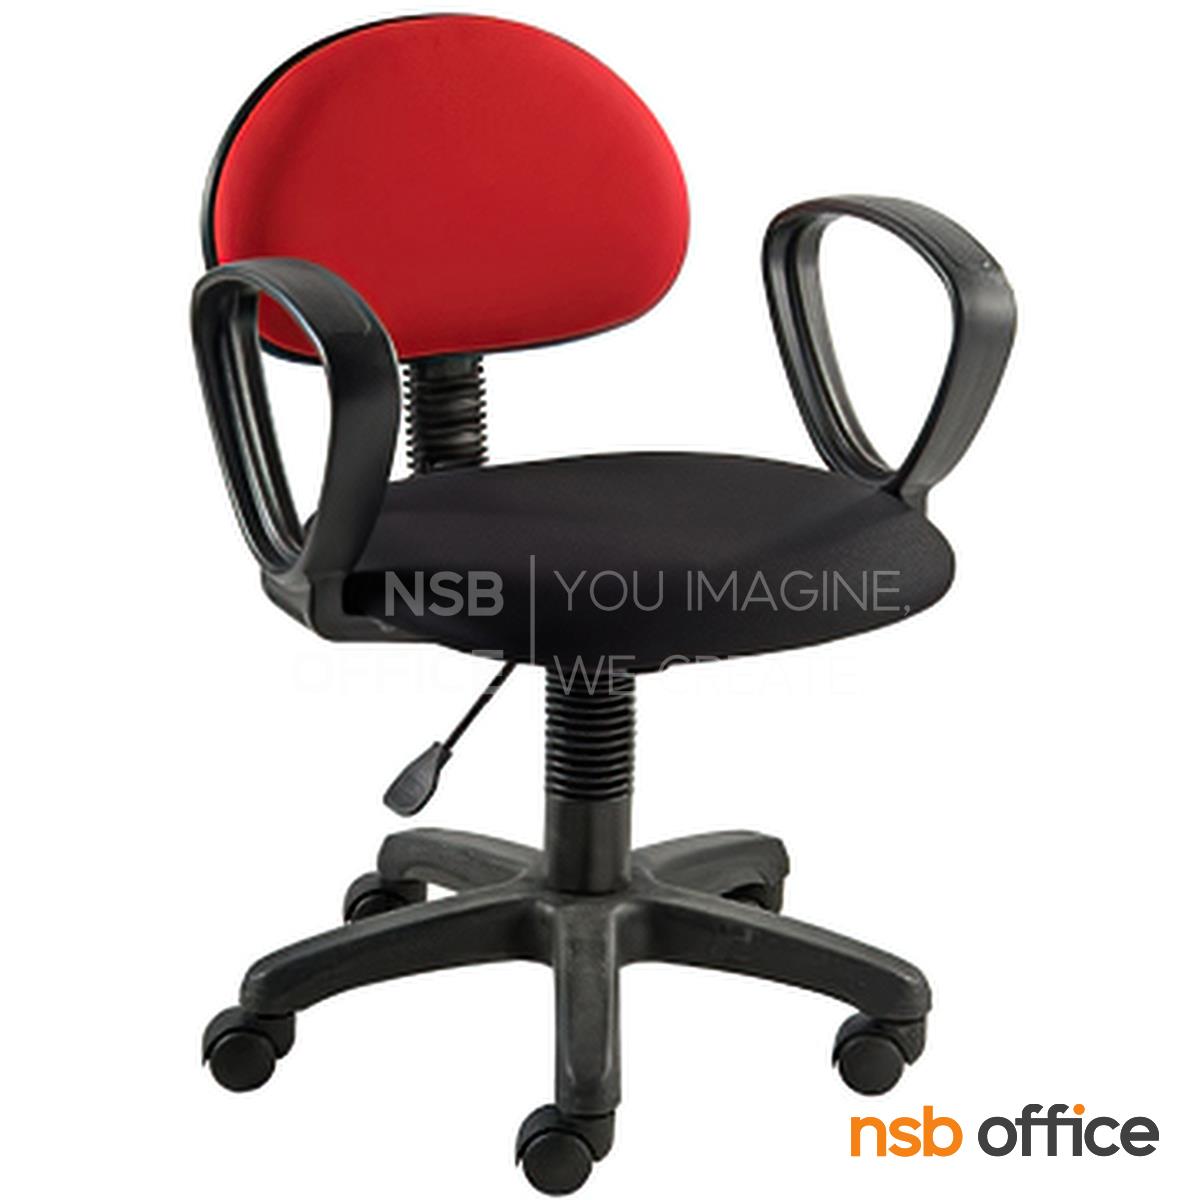 B03A514:เก้าอี้สำนักงาน รุ่น Blackrock (แบล็คร็อค)  ปรับระดับสูง-ต่ำได้ ขาพลาสติก 